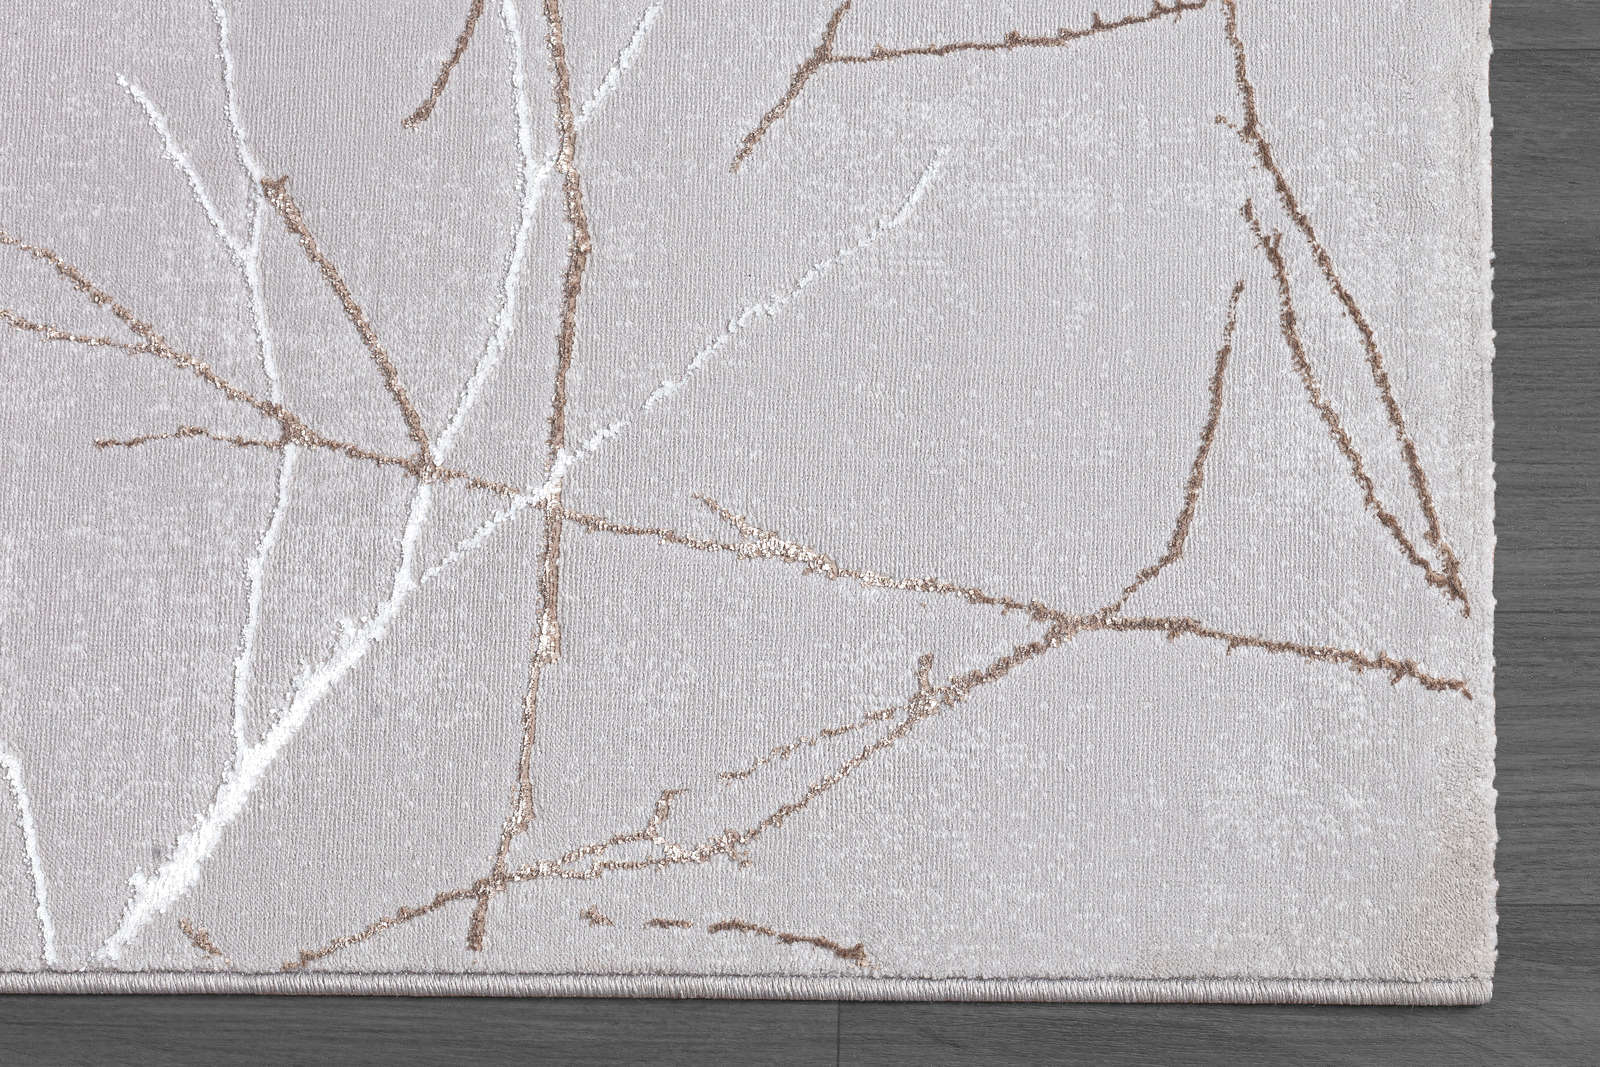             Hoogpolig tapijt met patroon in grijs - 290 x 200 cm
        